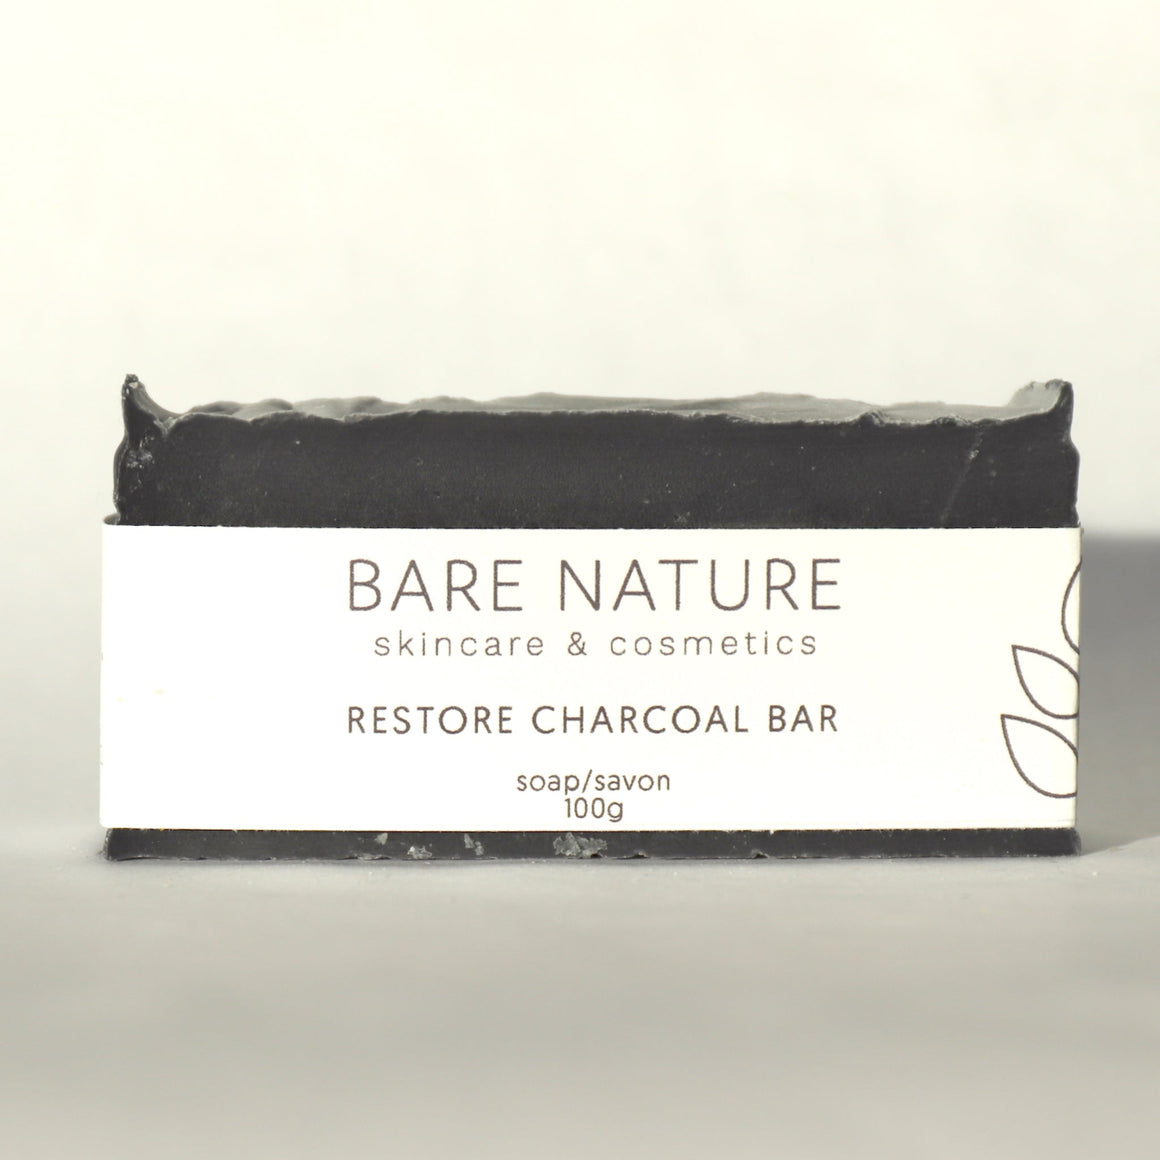 Restore Charcoal Bar - barenature.ca